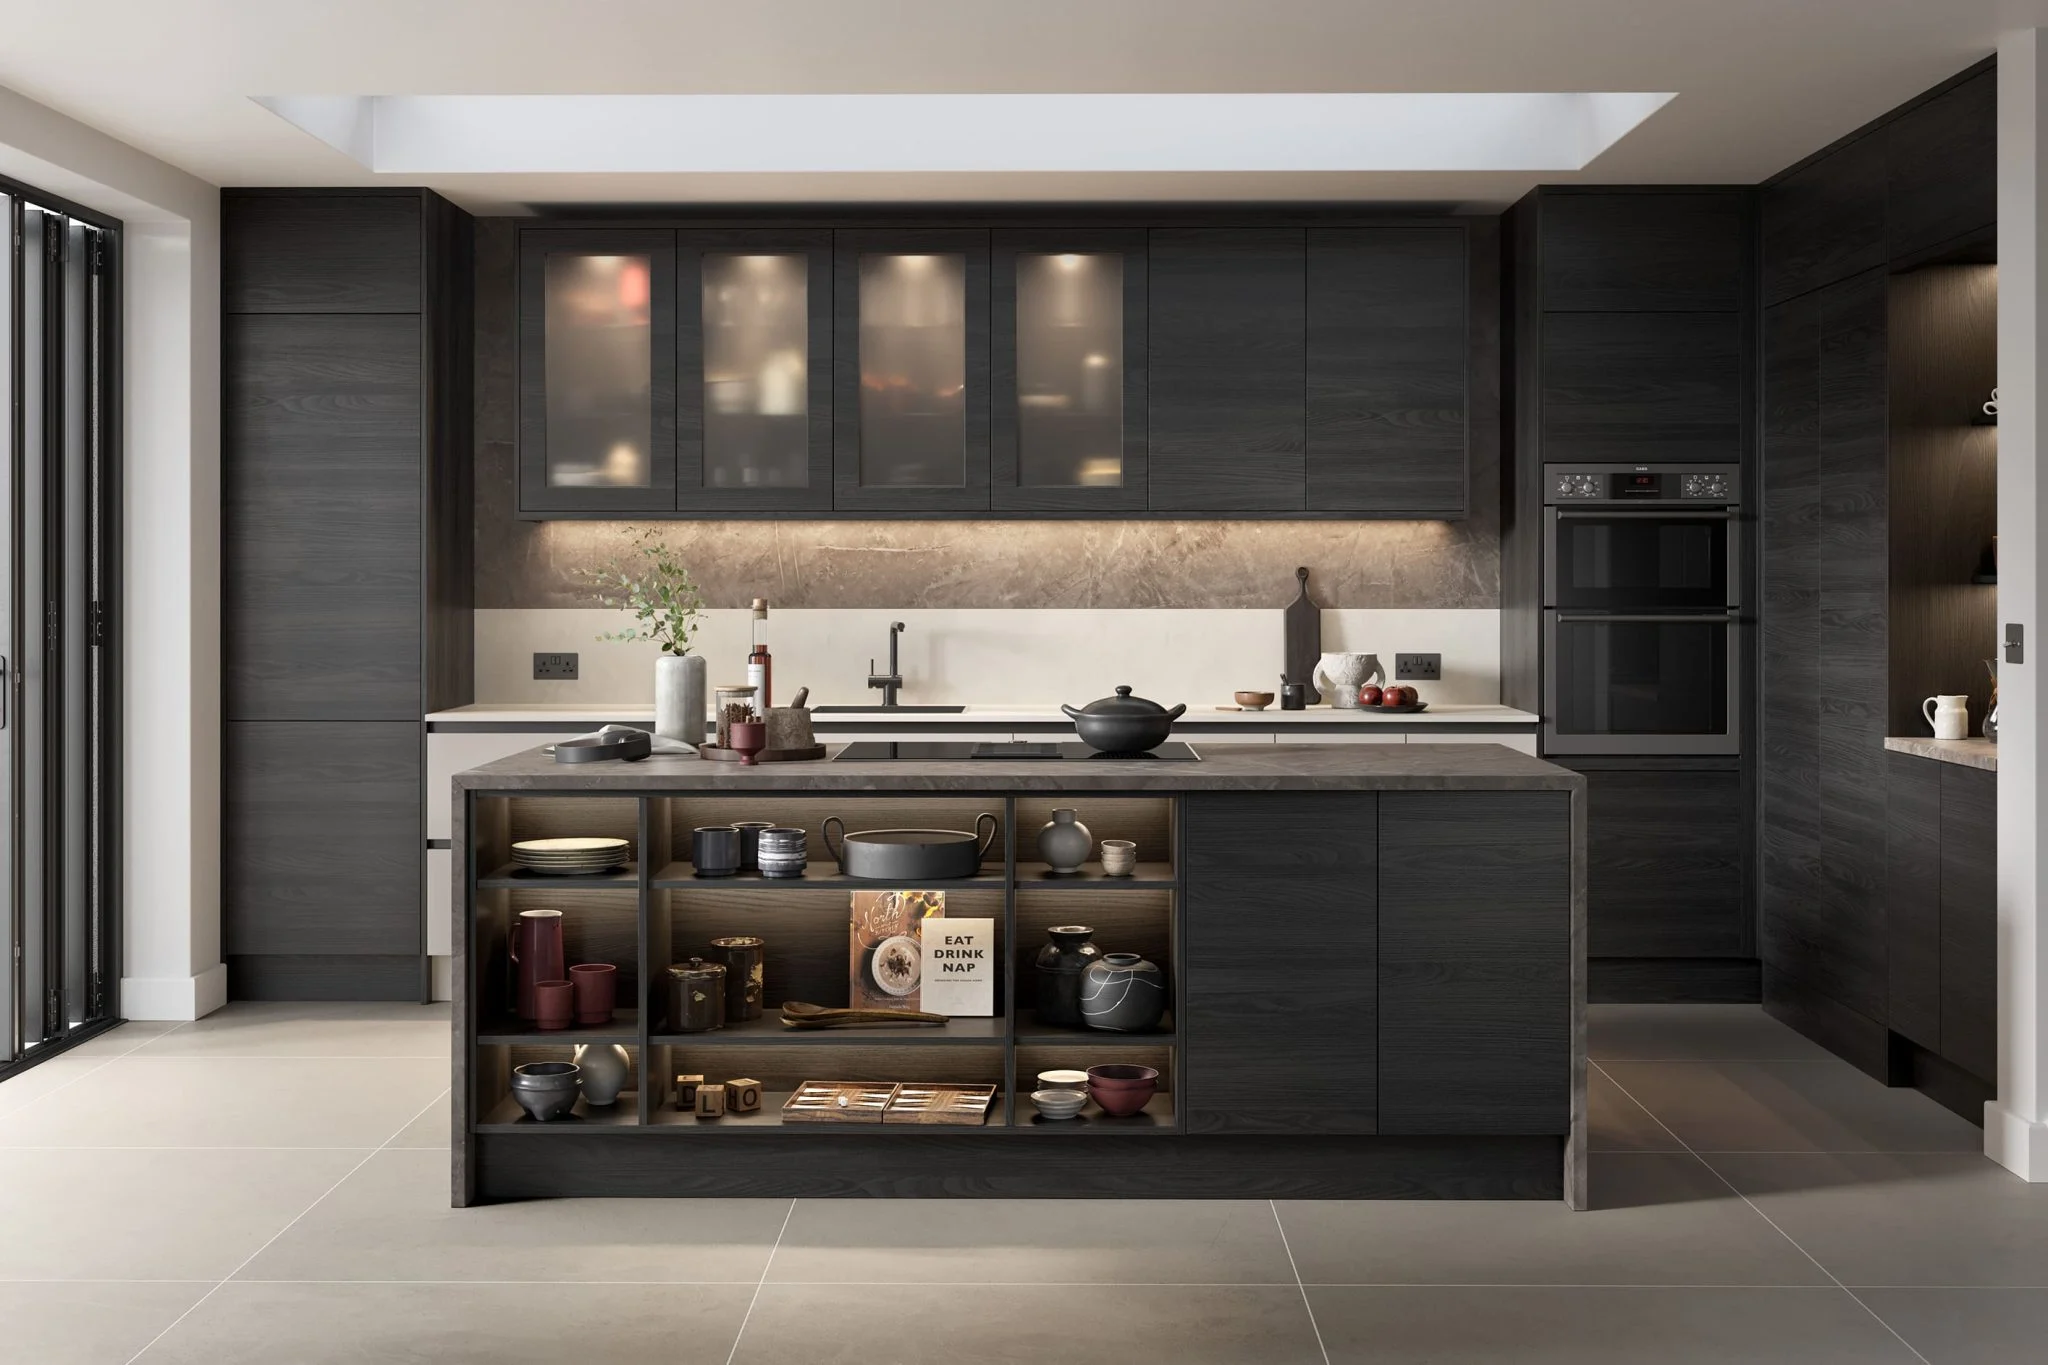 tavola-hacienda-black-zola-matte-light-grey-modern-contemporary-kitchen-uform-2048x1365